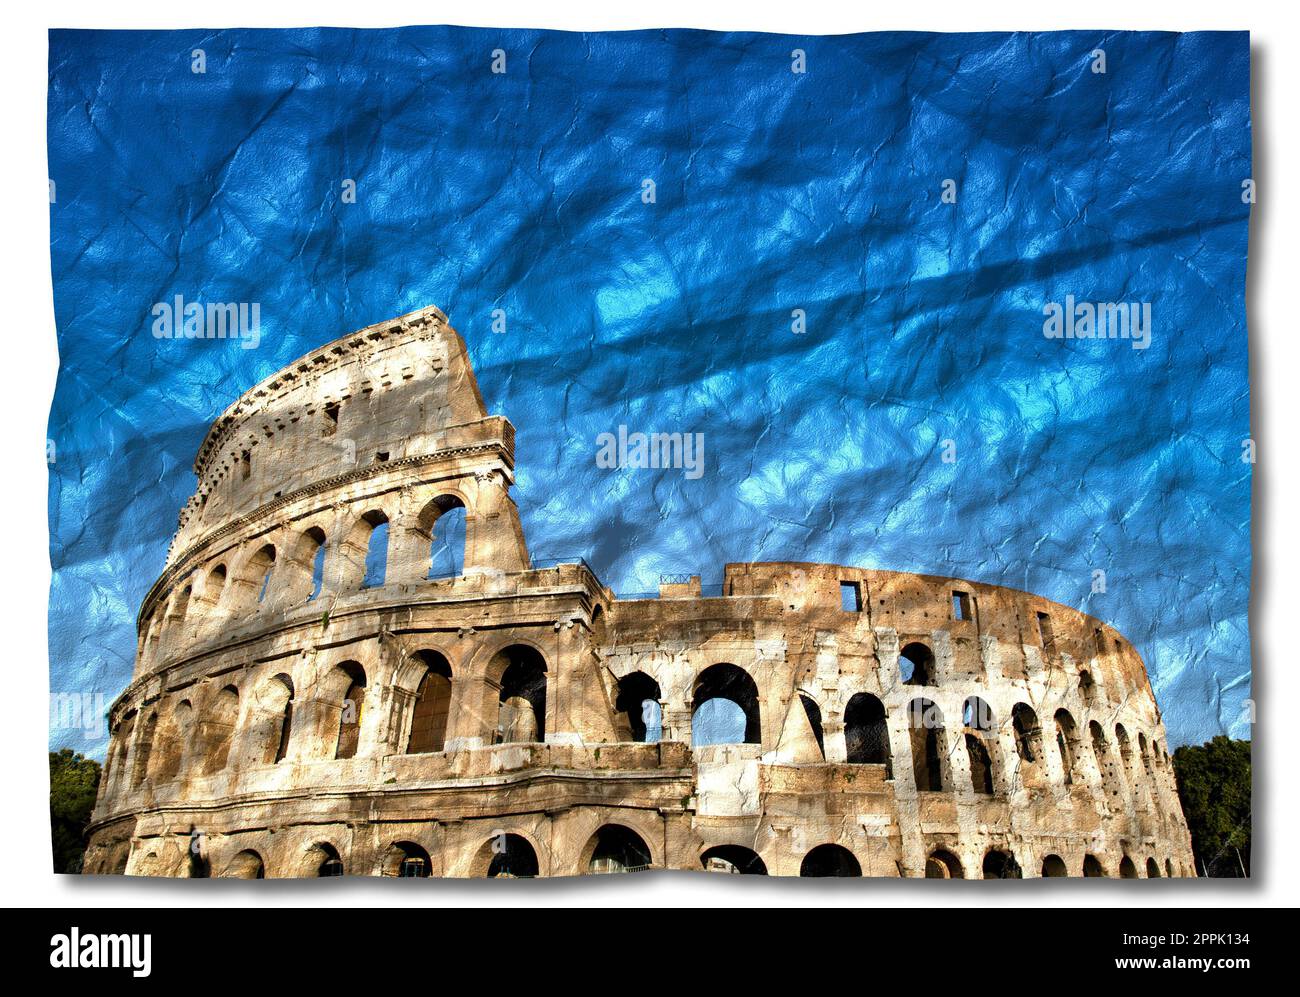 Italien, Rom - römisches Kolosseum mit blauem Himmel, das berühmteste italienische Wahrzeichen. Stockfoto